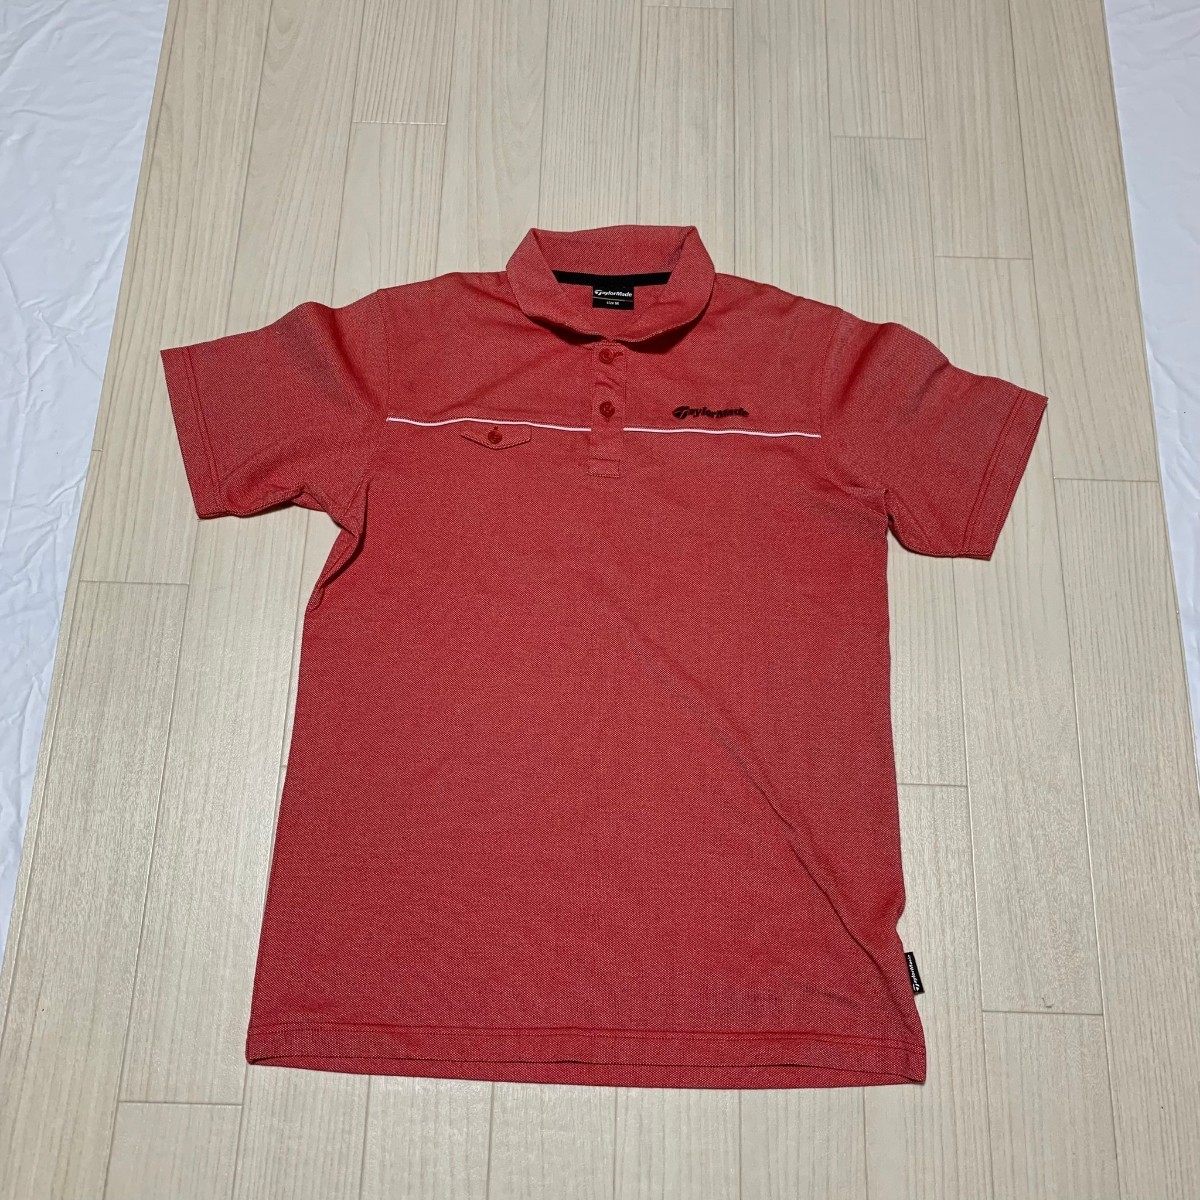 TayIor Made テーラー メイド ポロシャツ 半袖 ロゴ刺繍 ゴルフウェア メンズの画像1